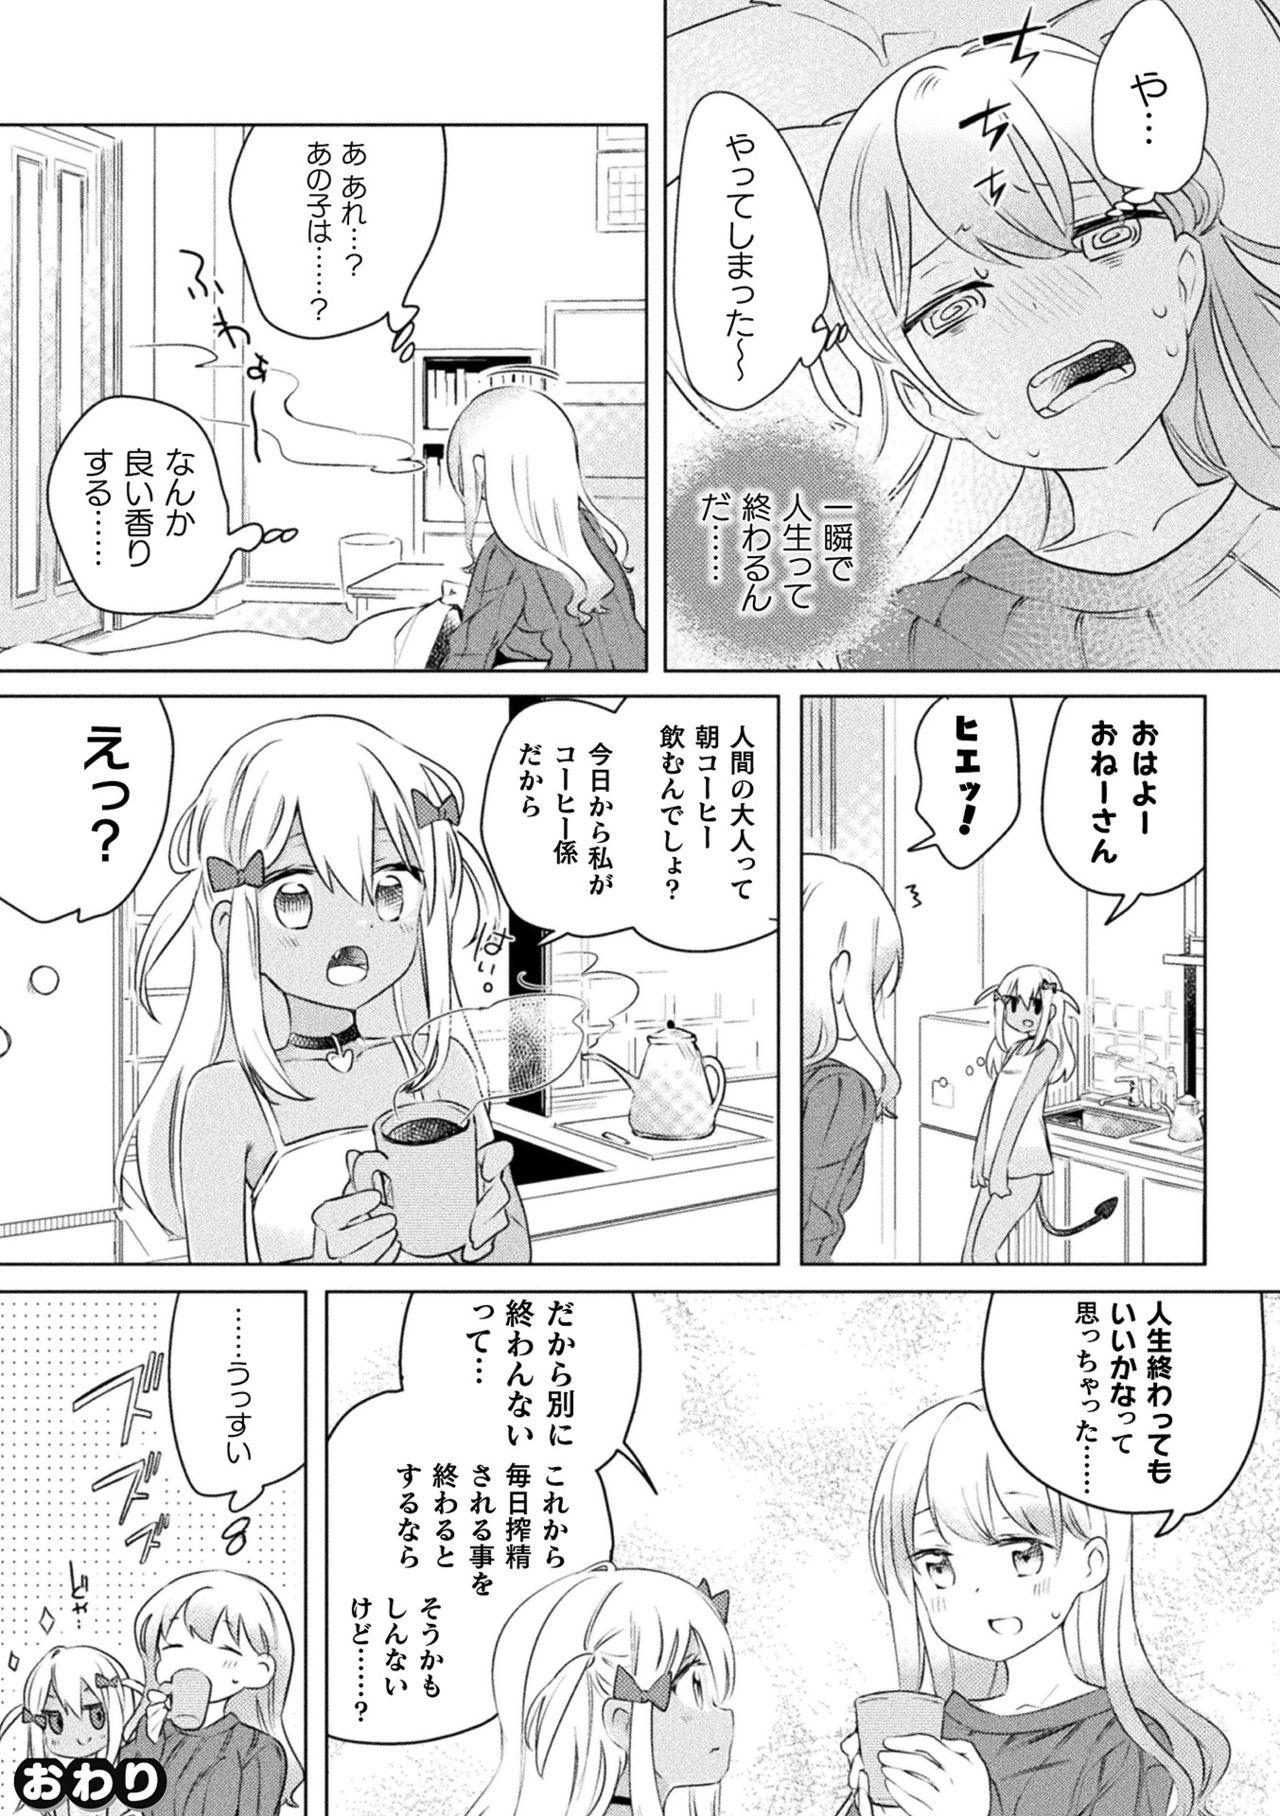 2D Comic Magazine Mesugaki vs Yasashii Onee-san Vol. 1 69